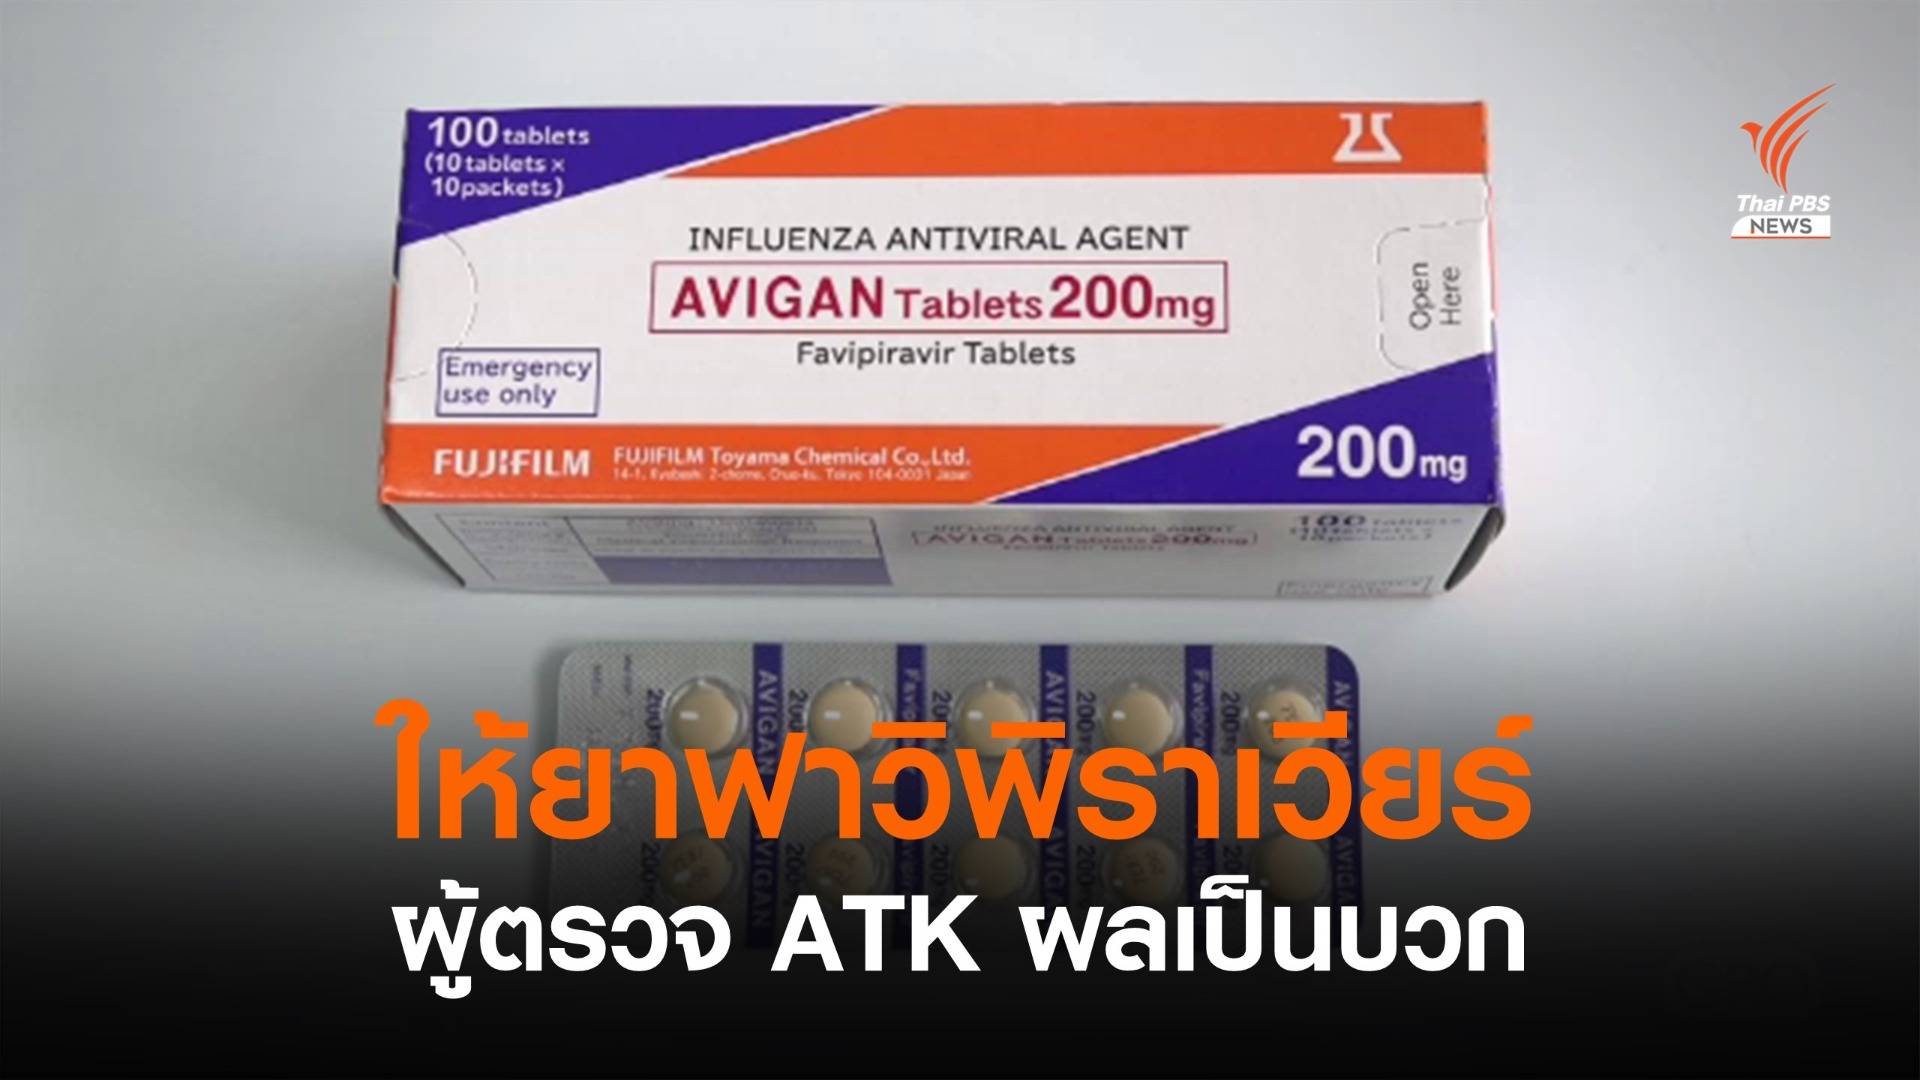 ราชกิจจาฯ ประกาศให้ยา "ฟาวิพิราเวียร์" แก่ผู้ตรวจ ATK ผลเป็นบวก